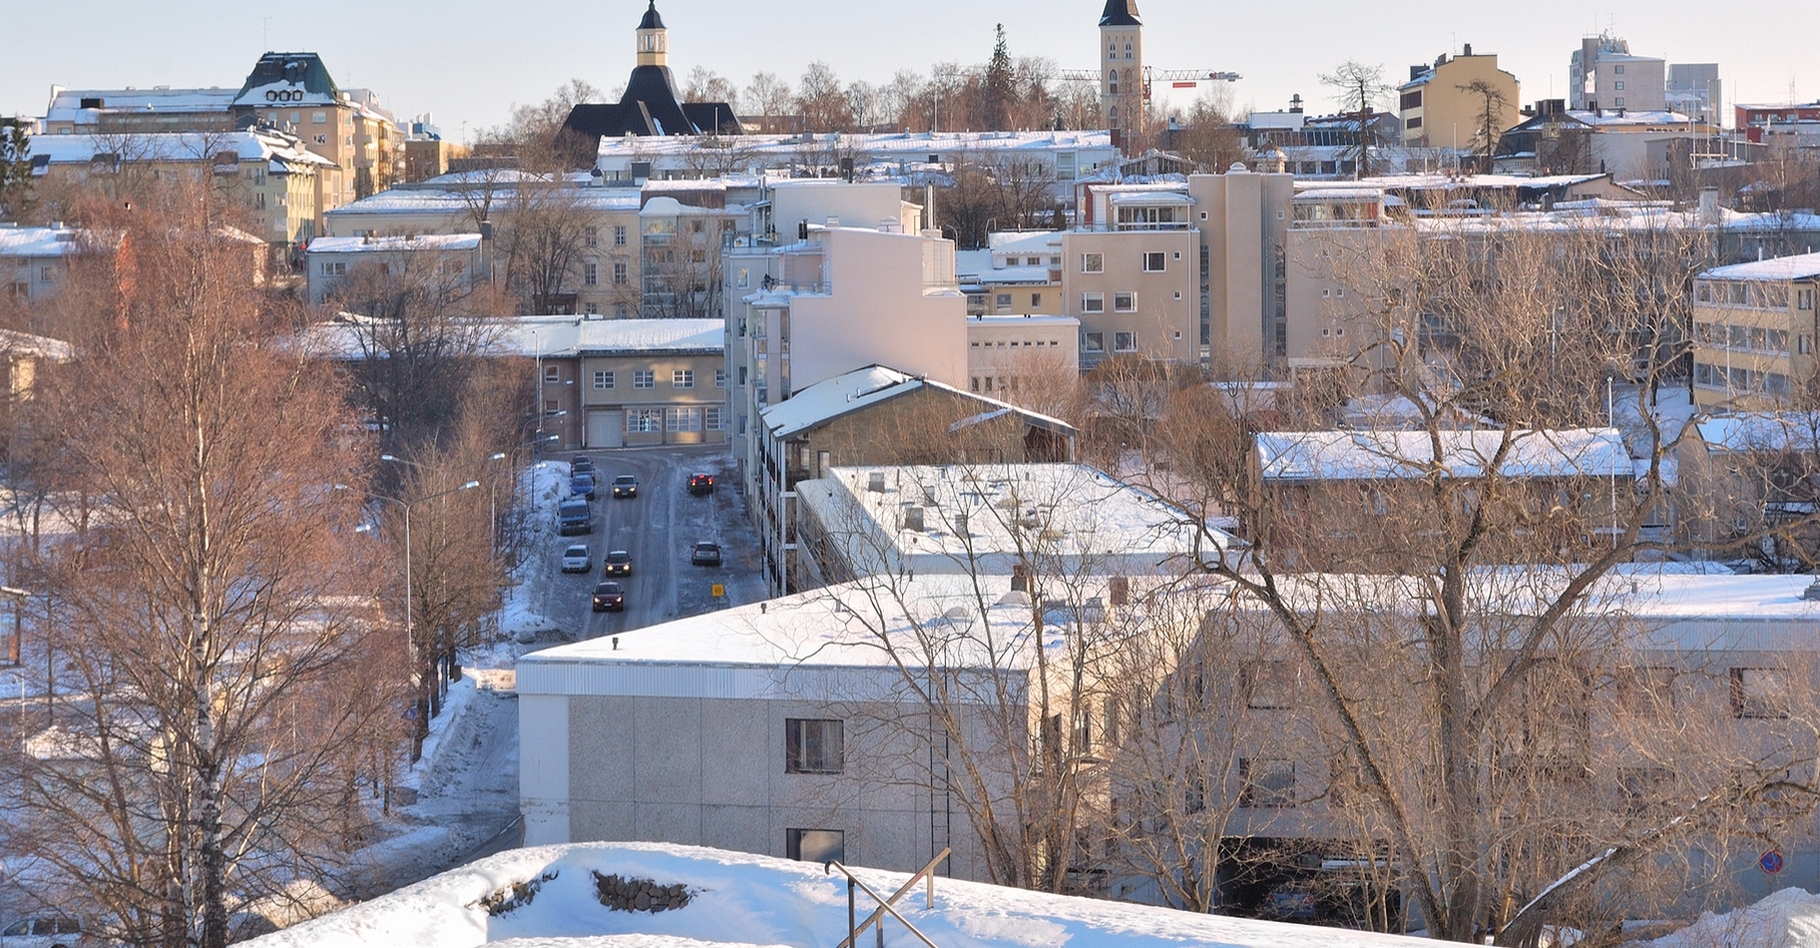 Dans la ville de Lappeenranta, en Finlande, deux immeubles ont été privés de chauffage suite à une attaque informatique qui visait l’infrastructure à laquelle était connecté l’ordinateur chargé de réguler la température et l’eau chaude. © Estea, Shutterstock